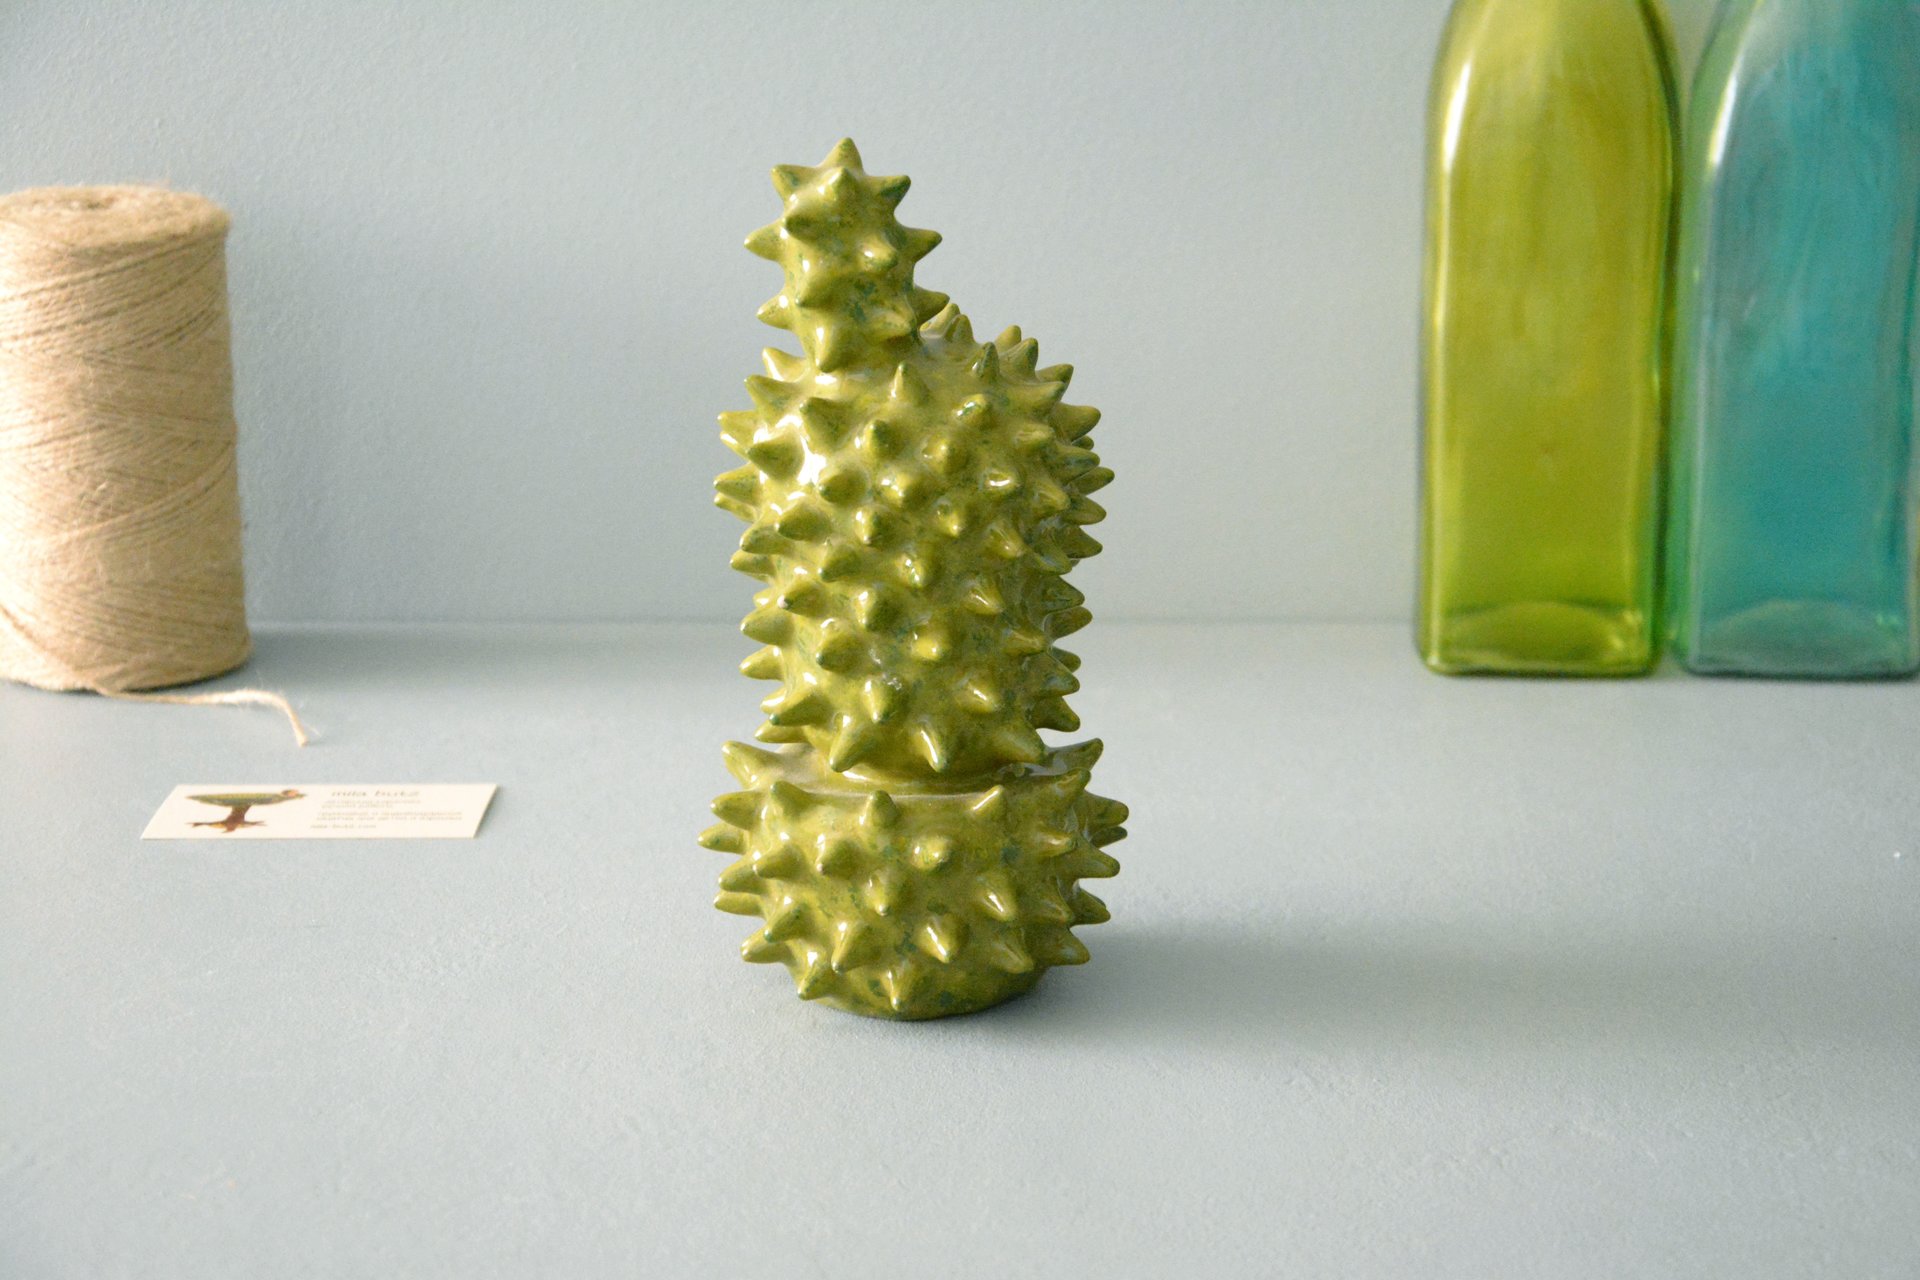 Decorative cactus Echinopsis - Cactus ceramic, height - 21 cm, photo 2 of 5.